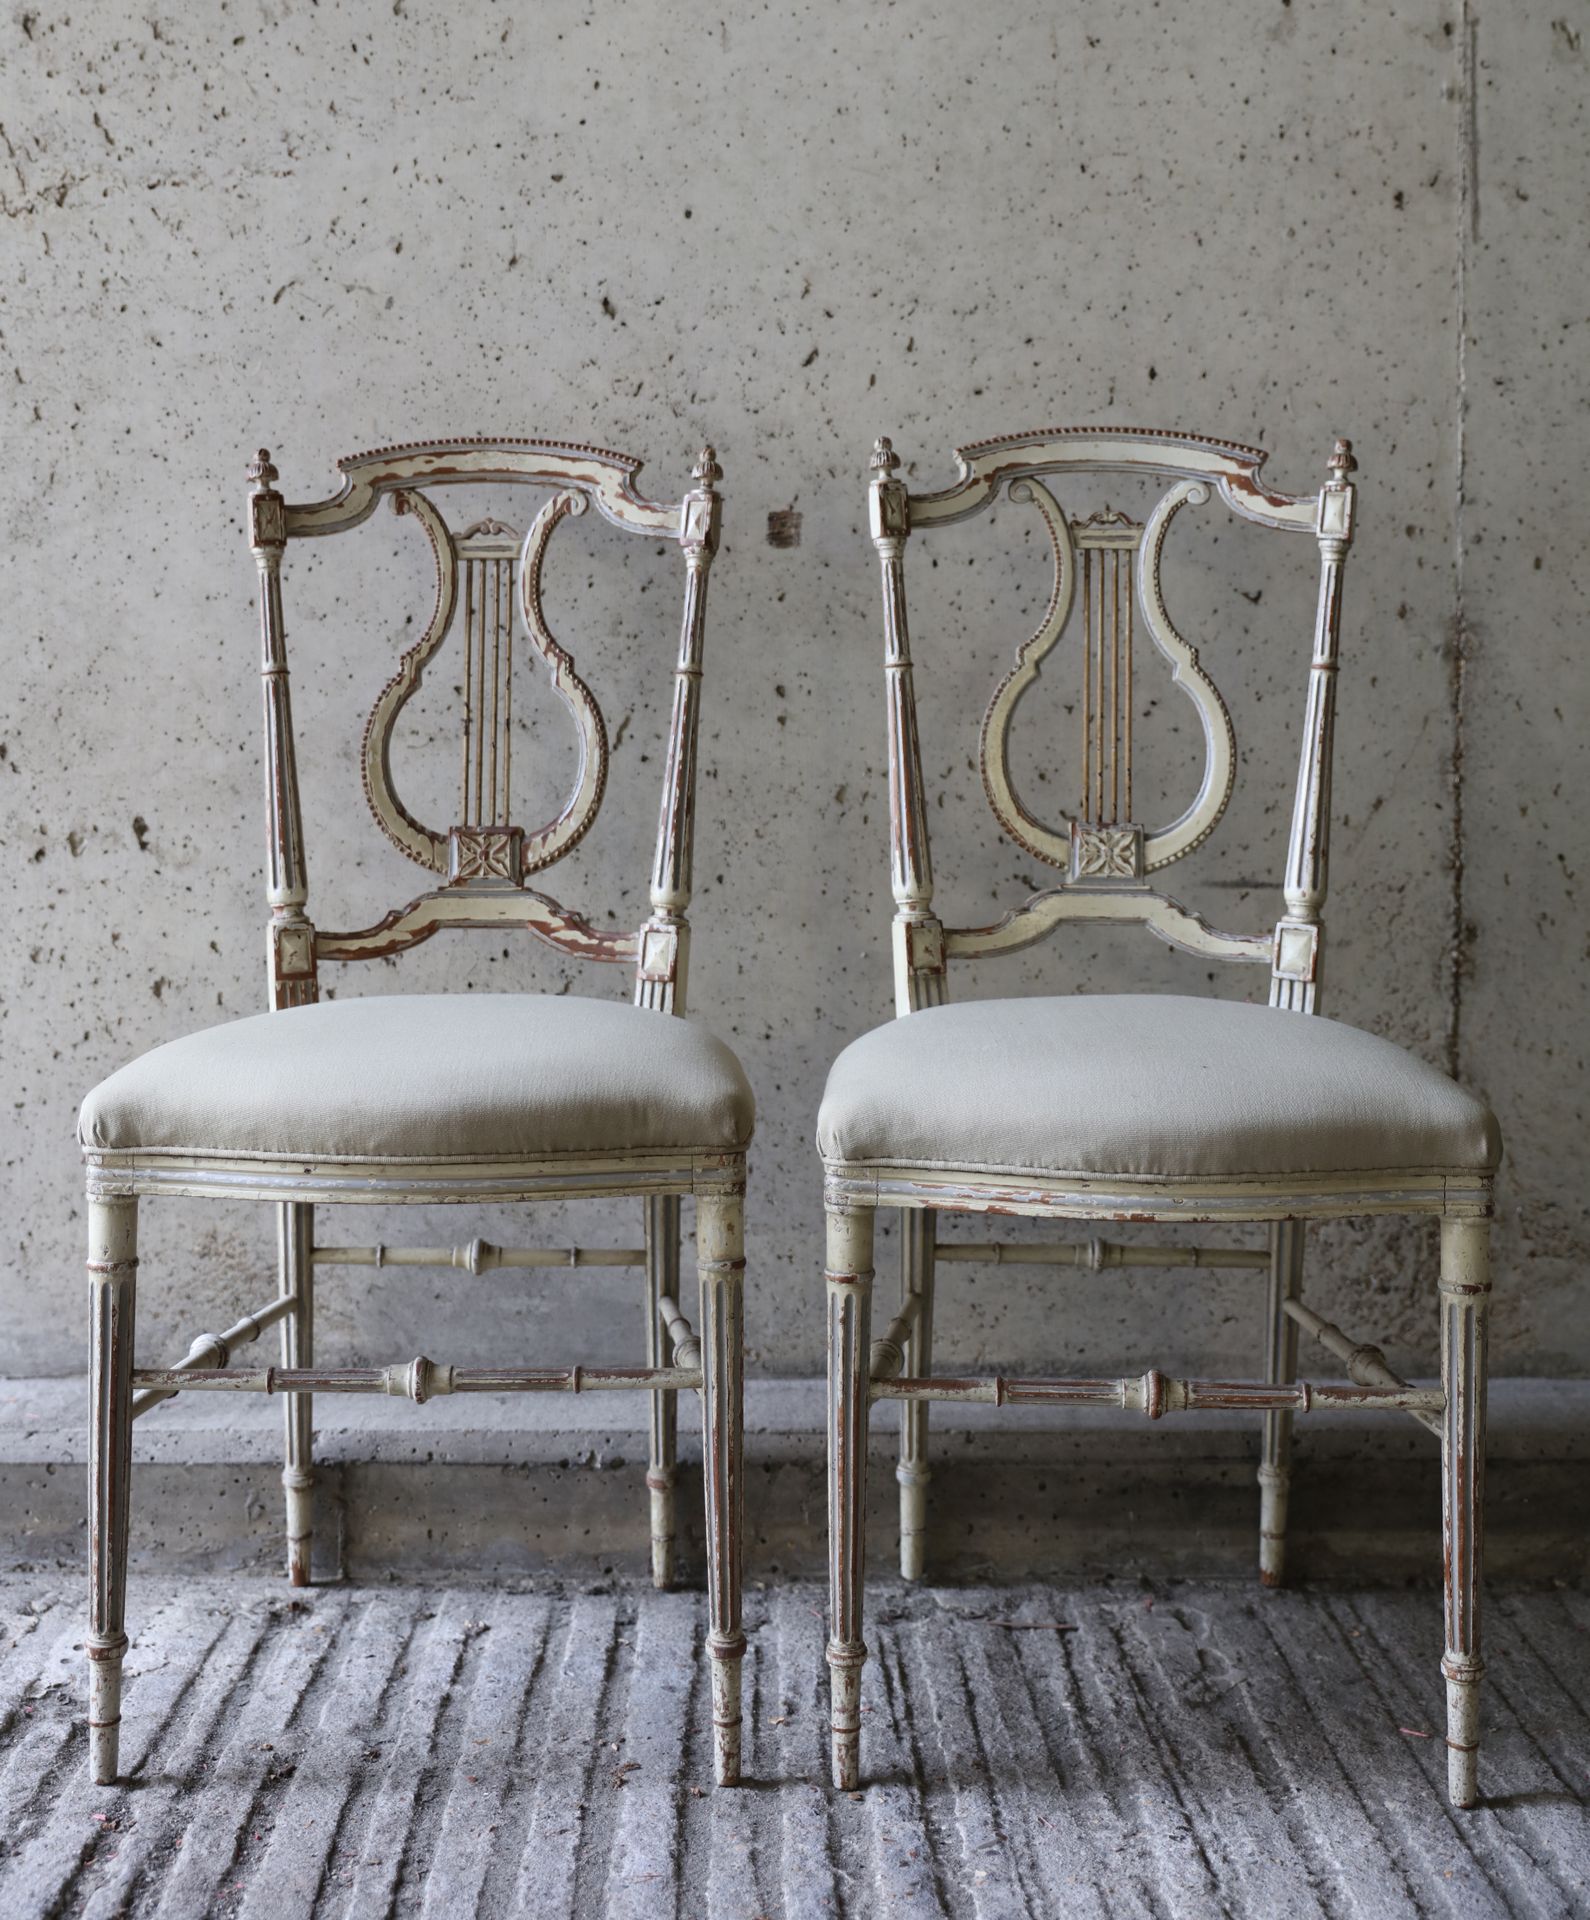 VARIA 路易十六风格的一对椅子，椅背呈琴状
Paar stoeltjes in Louis XVI stijl met rugleuning in de v&hellip;